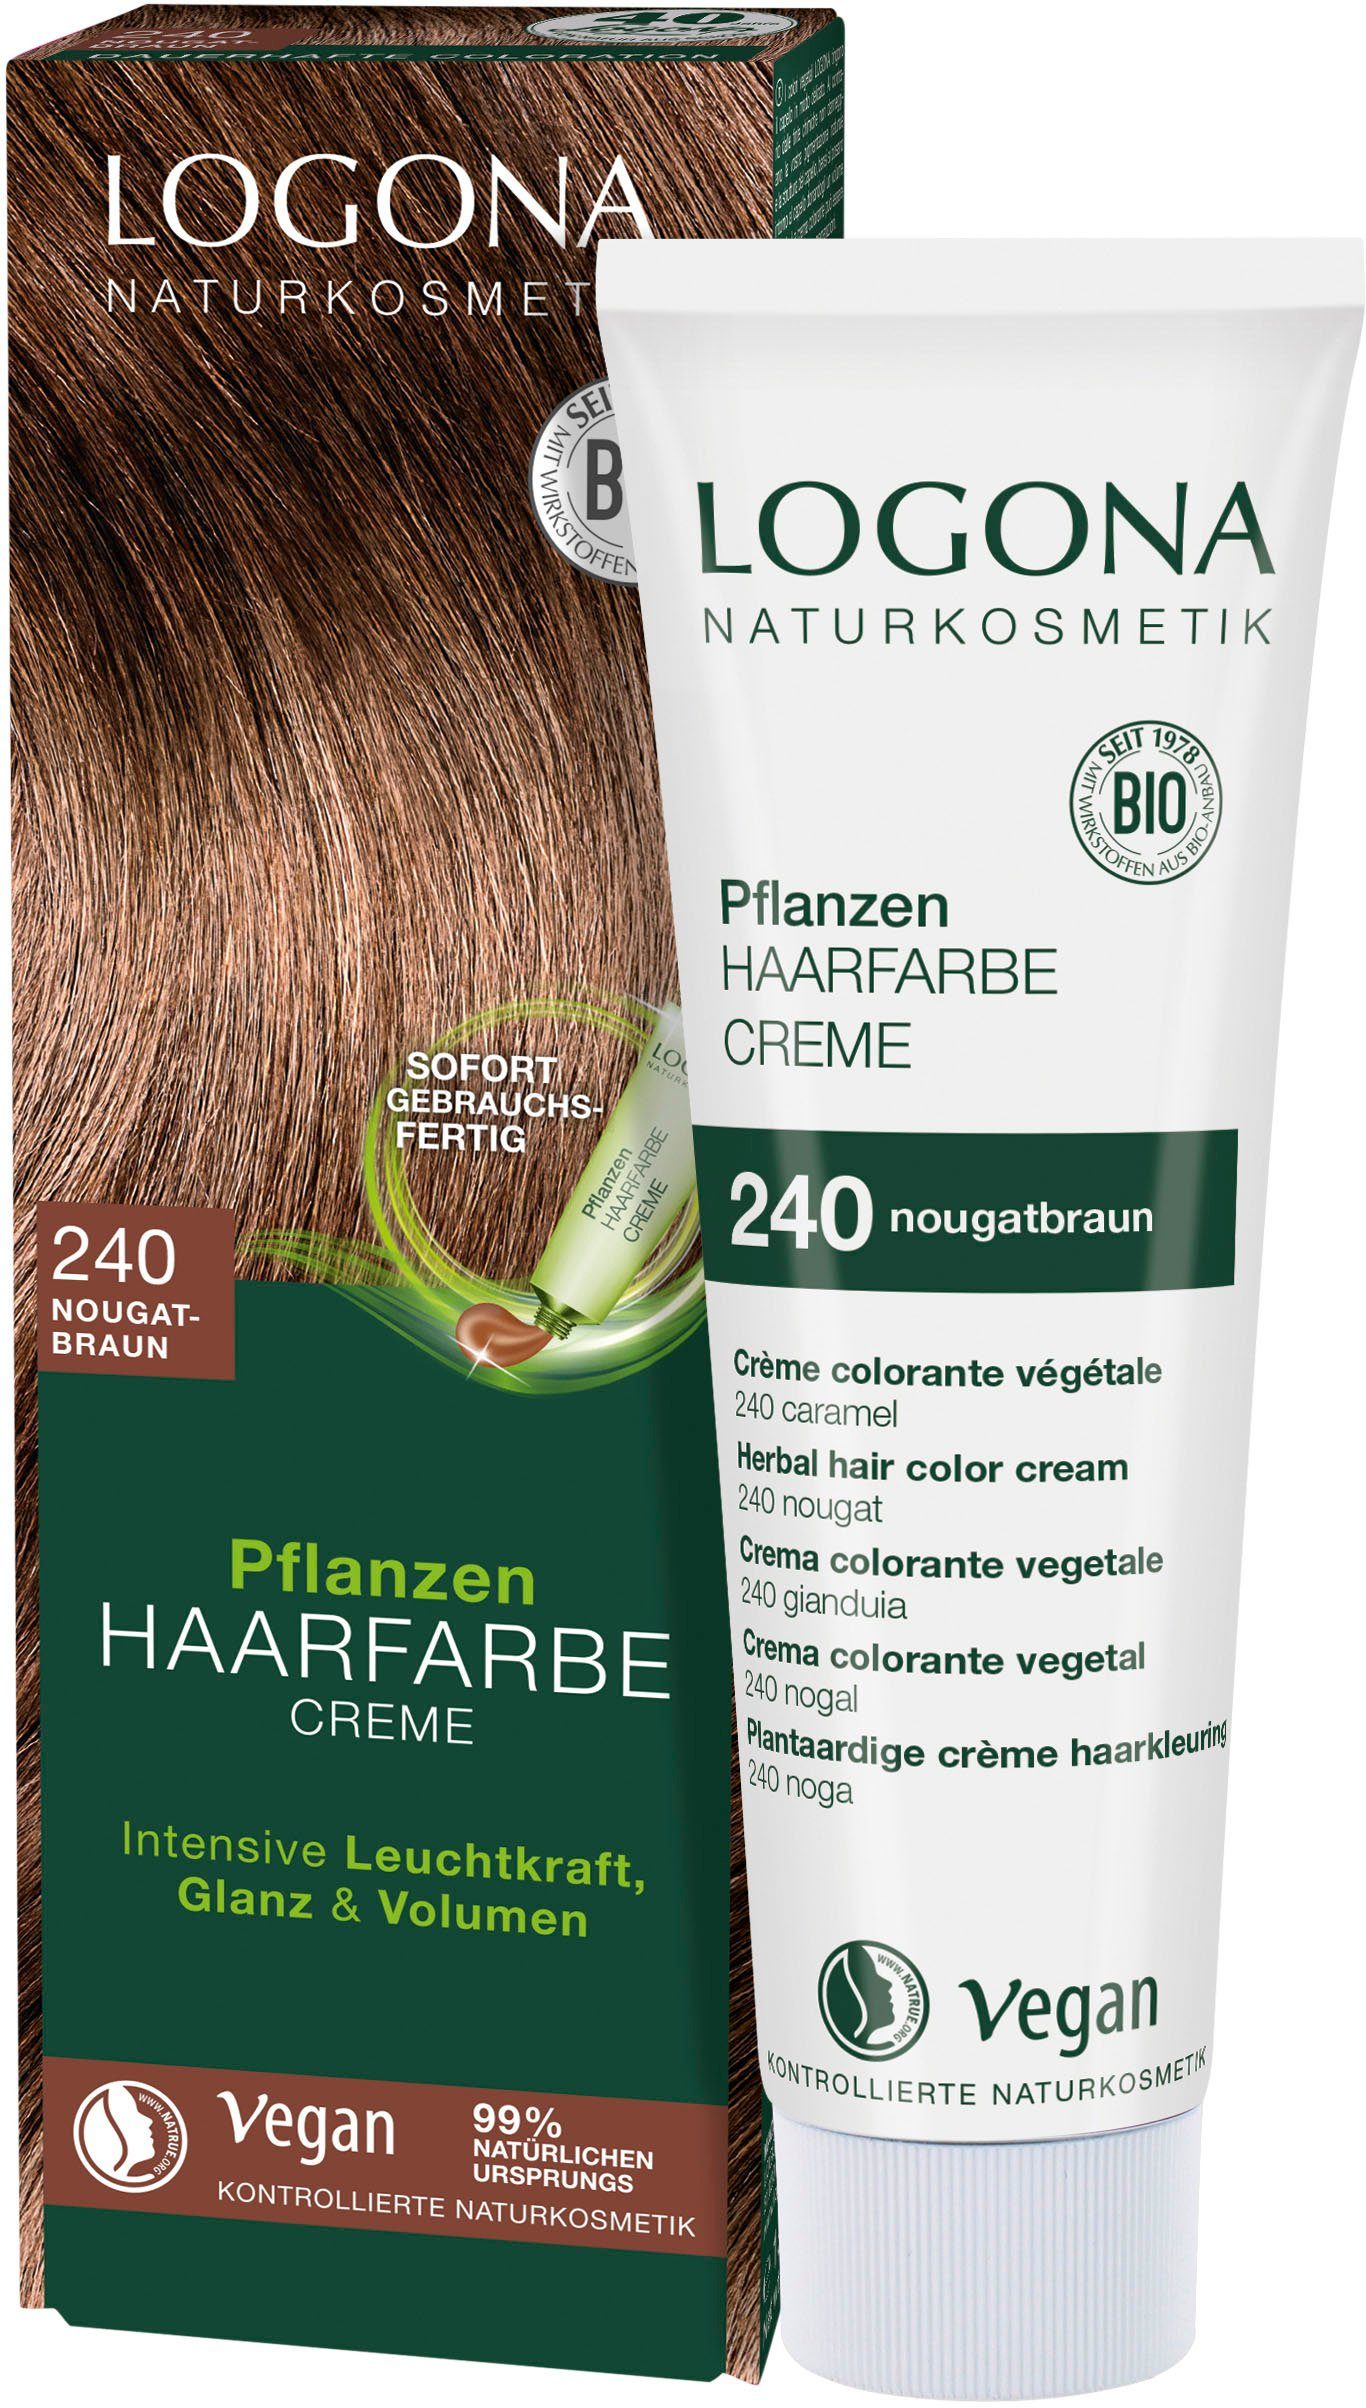 LOGONA Haarfarbe Creme Logona 240 nougatbraun Pflanzen-Haarfarbe